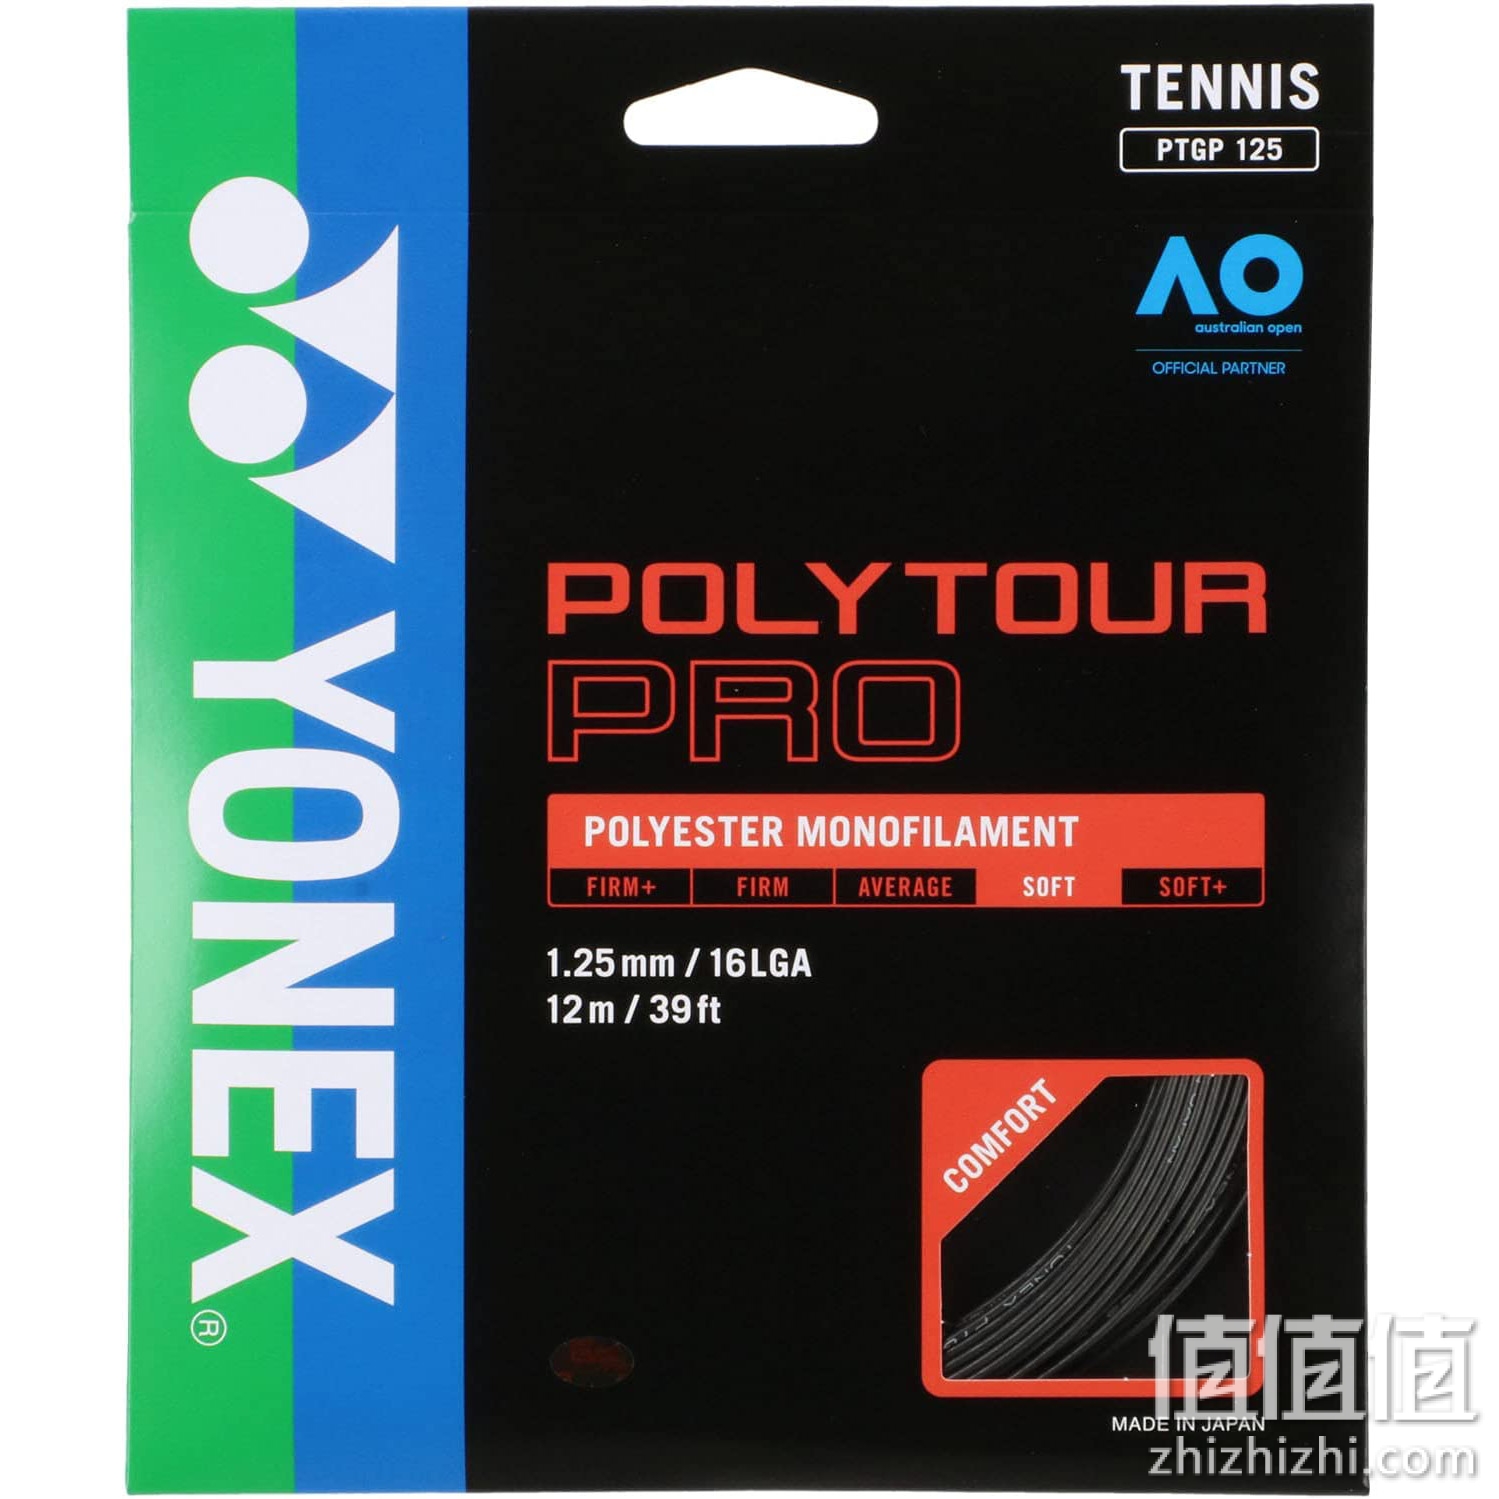 ヨネックス(YONEX) POLYTOUR PRO125 (テニス用) グラファイト PTGP125